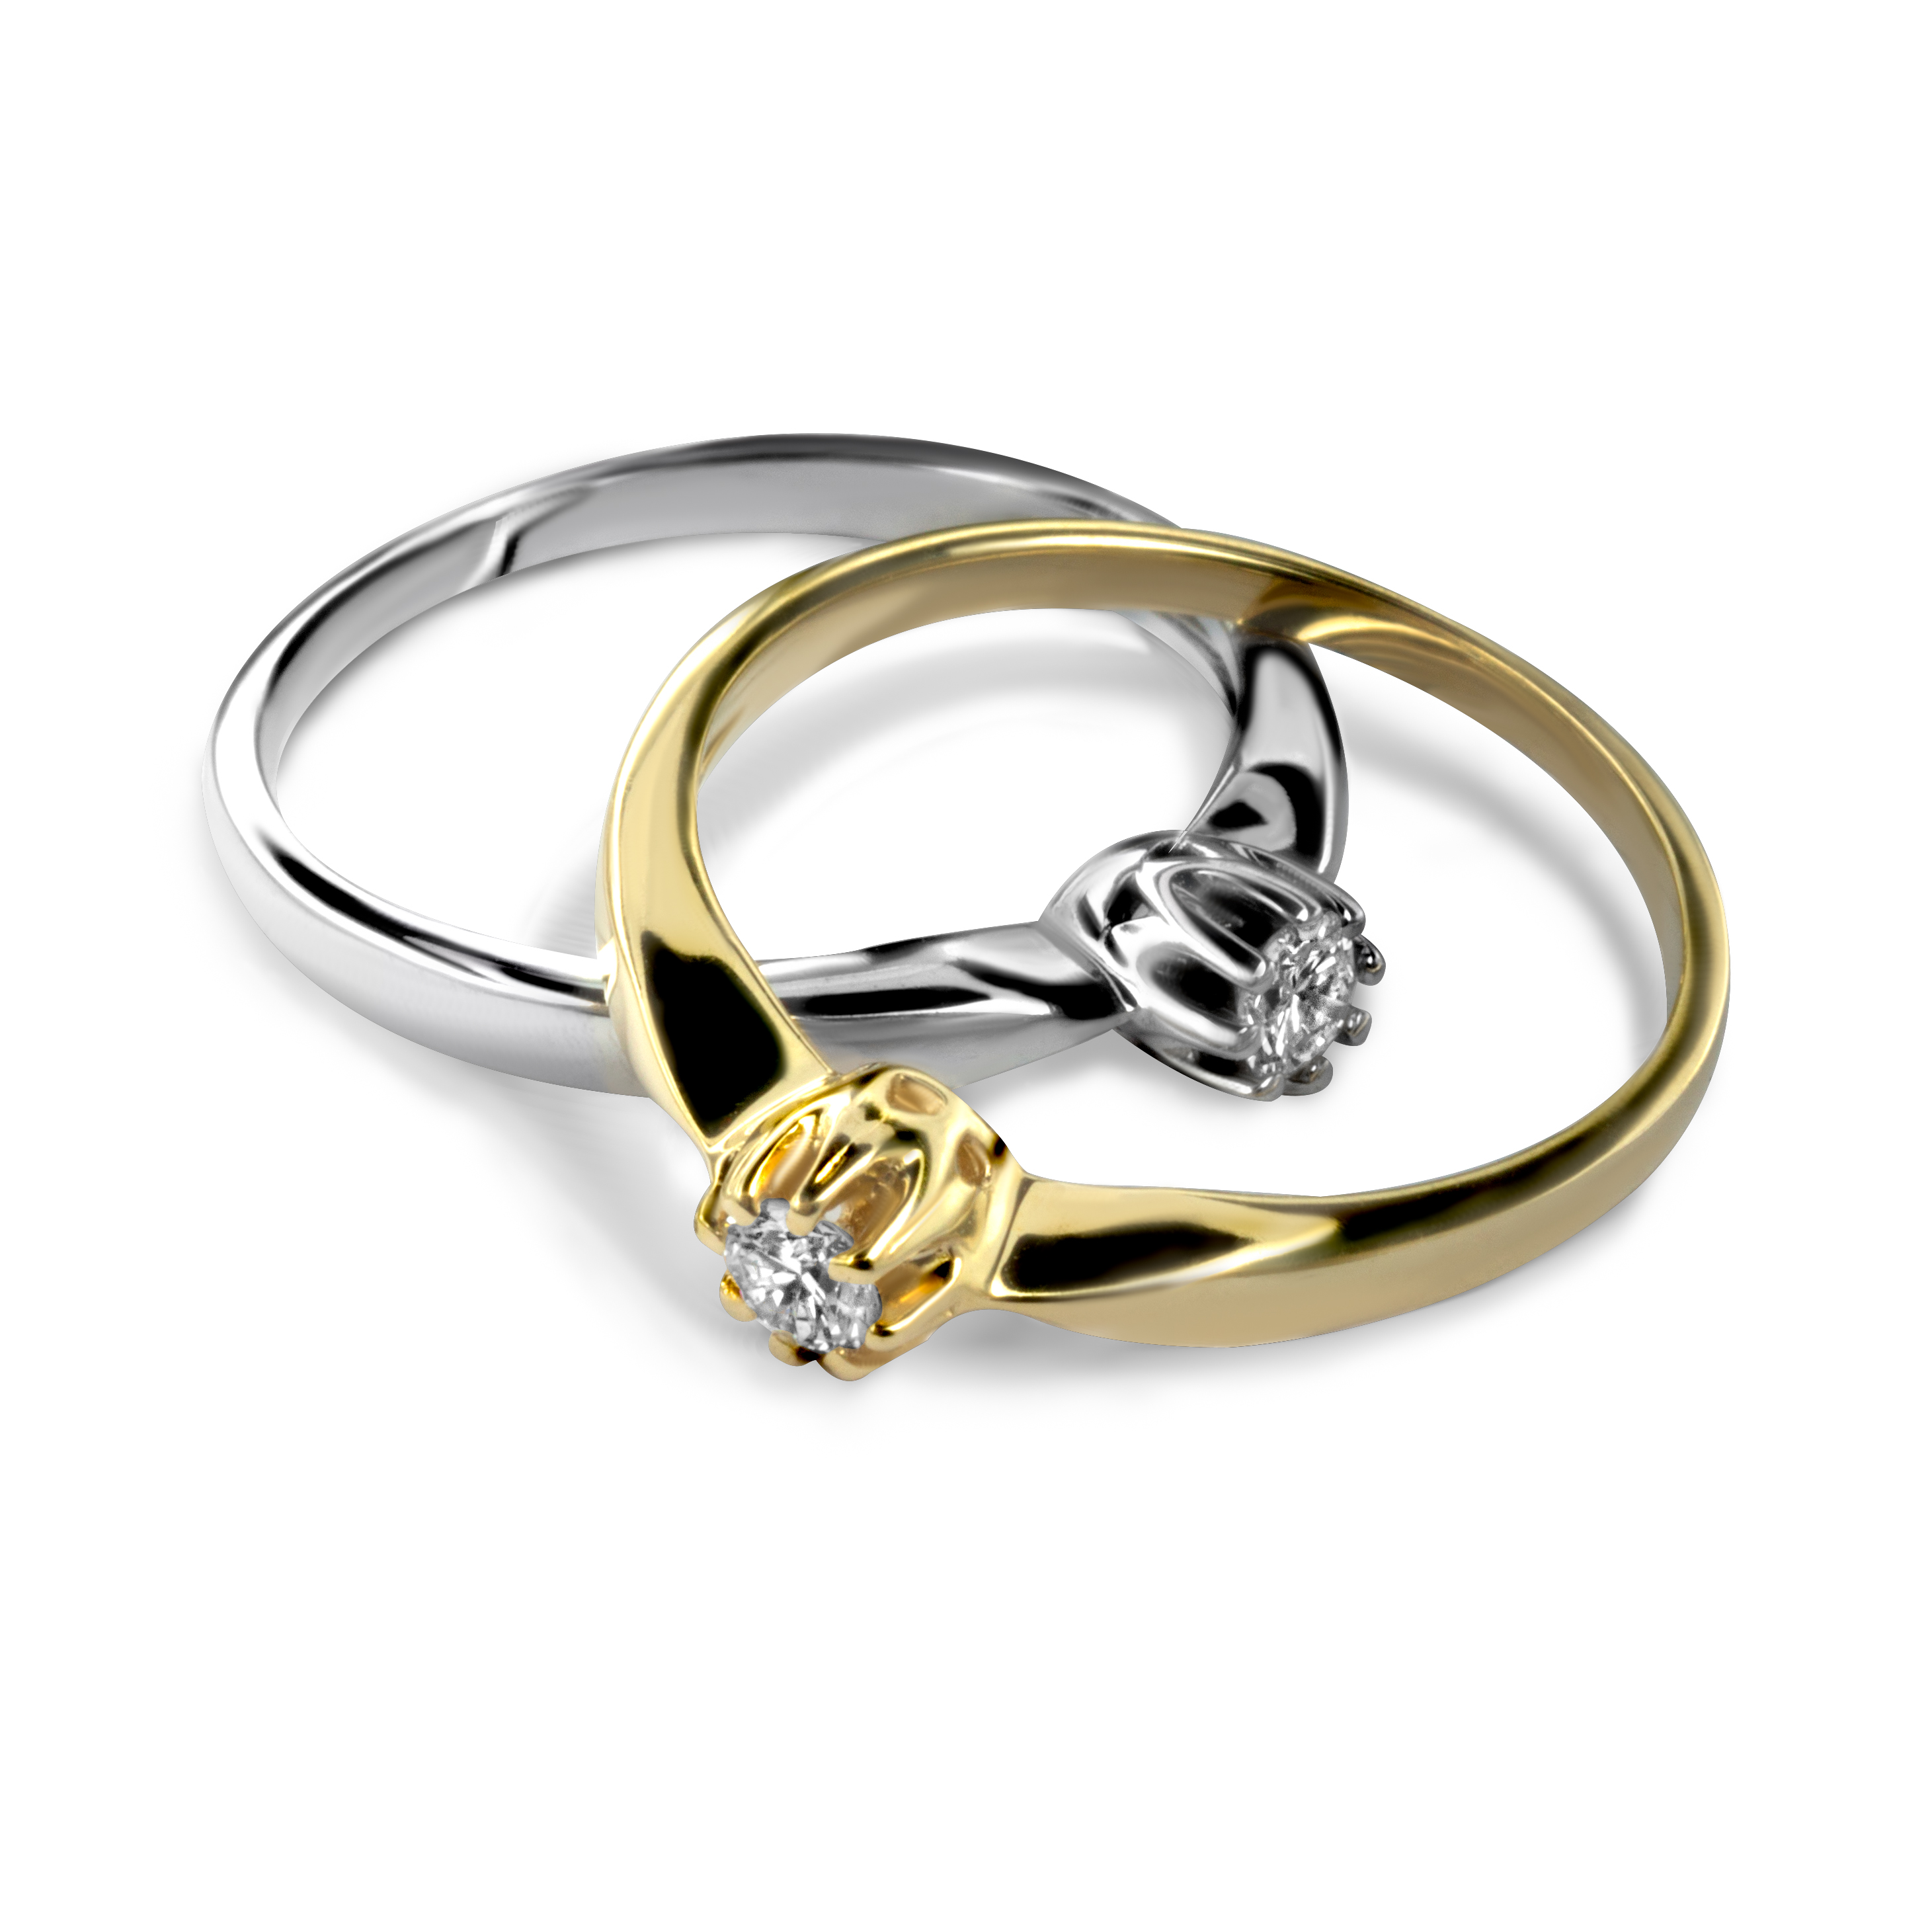 Diament w koronie - złoty pierścionek z diamentem - komplet